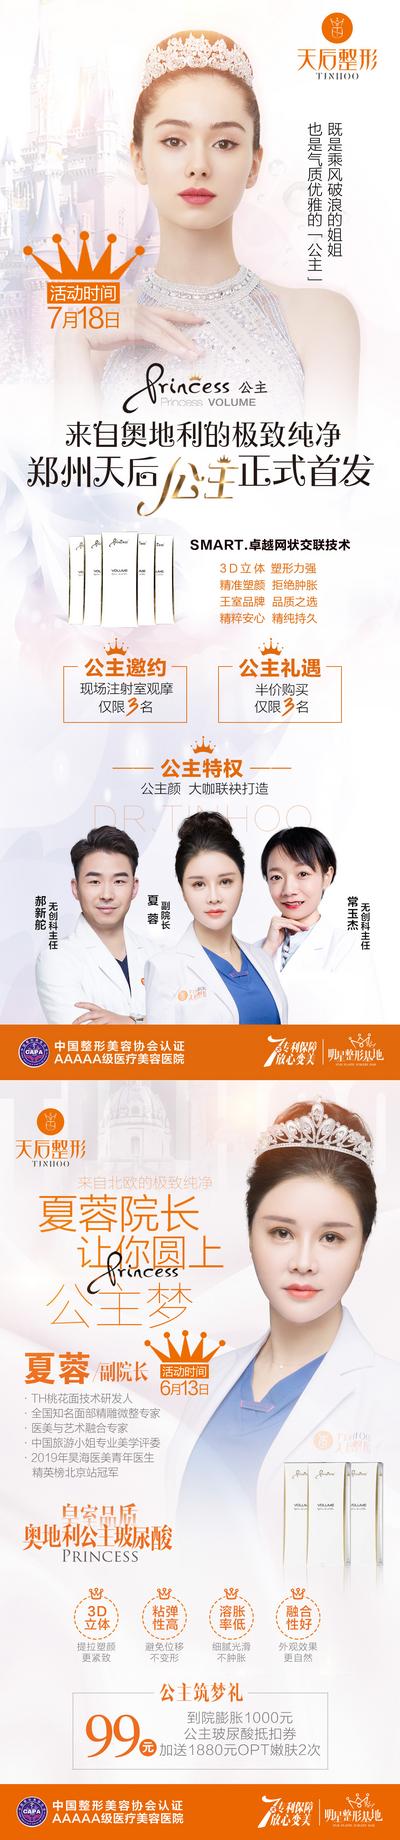 【南门网】海报 医美 整形 美容 玻尿酸  人物 专家 橙色